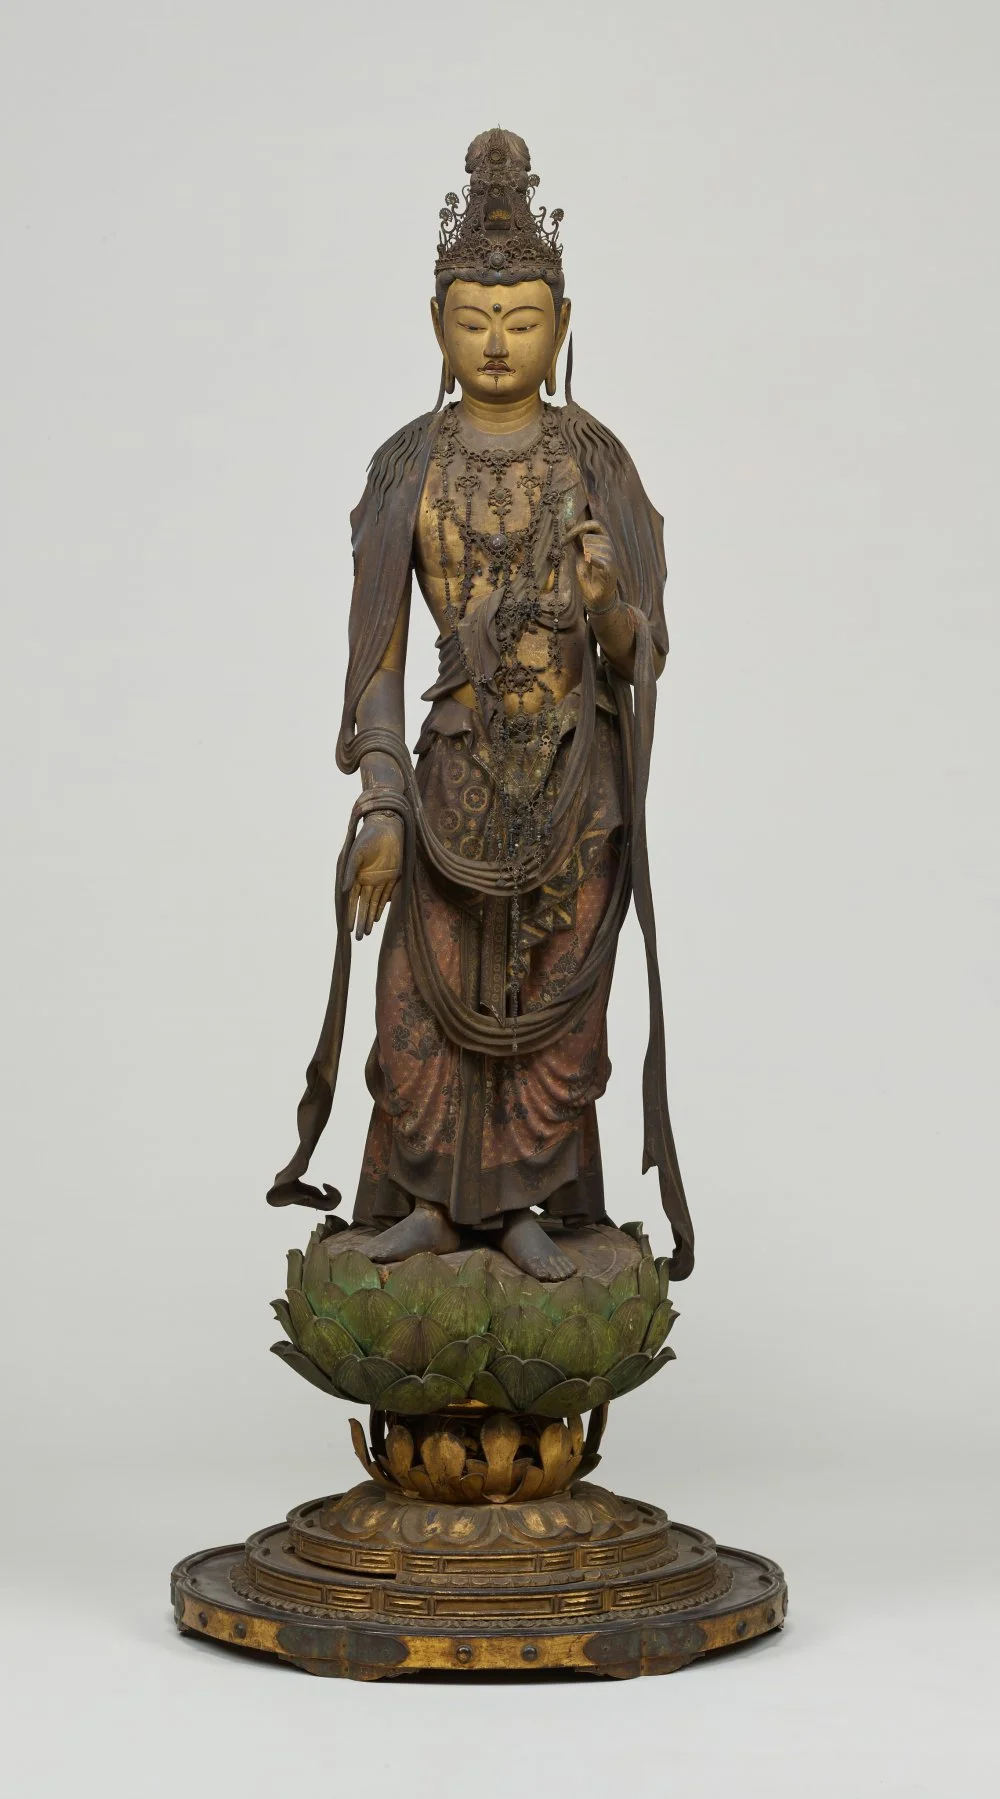 Bodhisattva. Tokyo national museum, Japan. 13th century/Wikimedia Commons